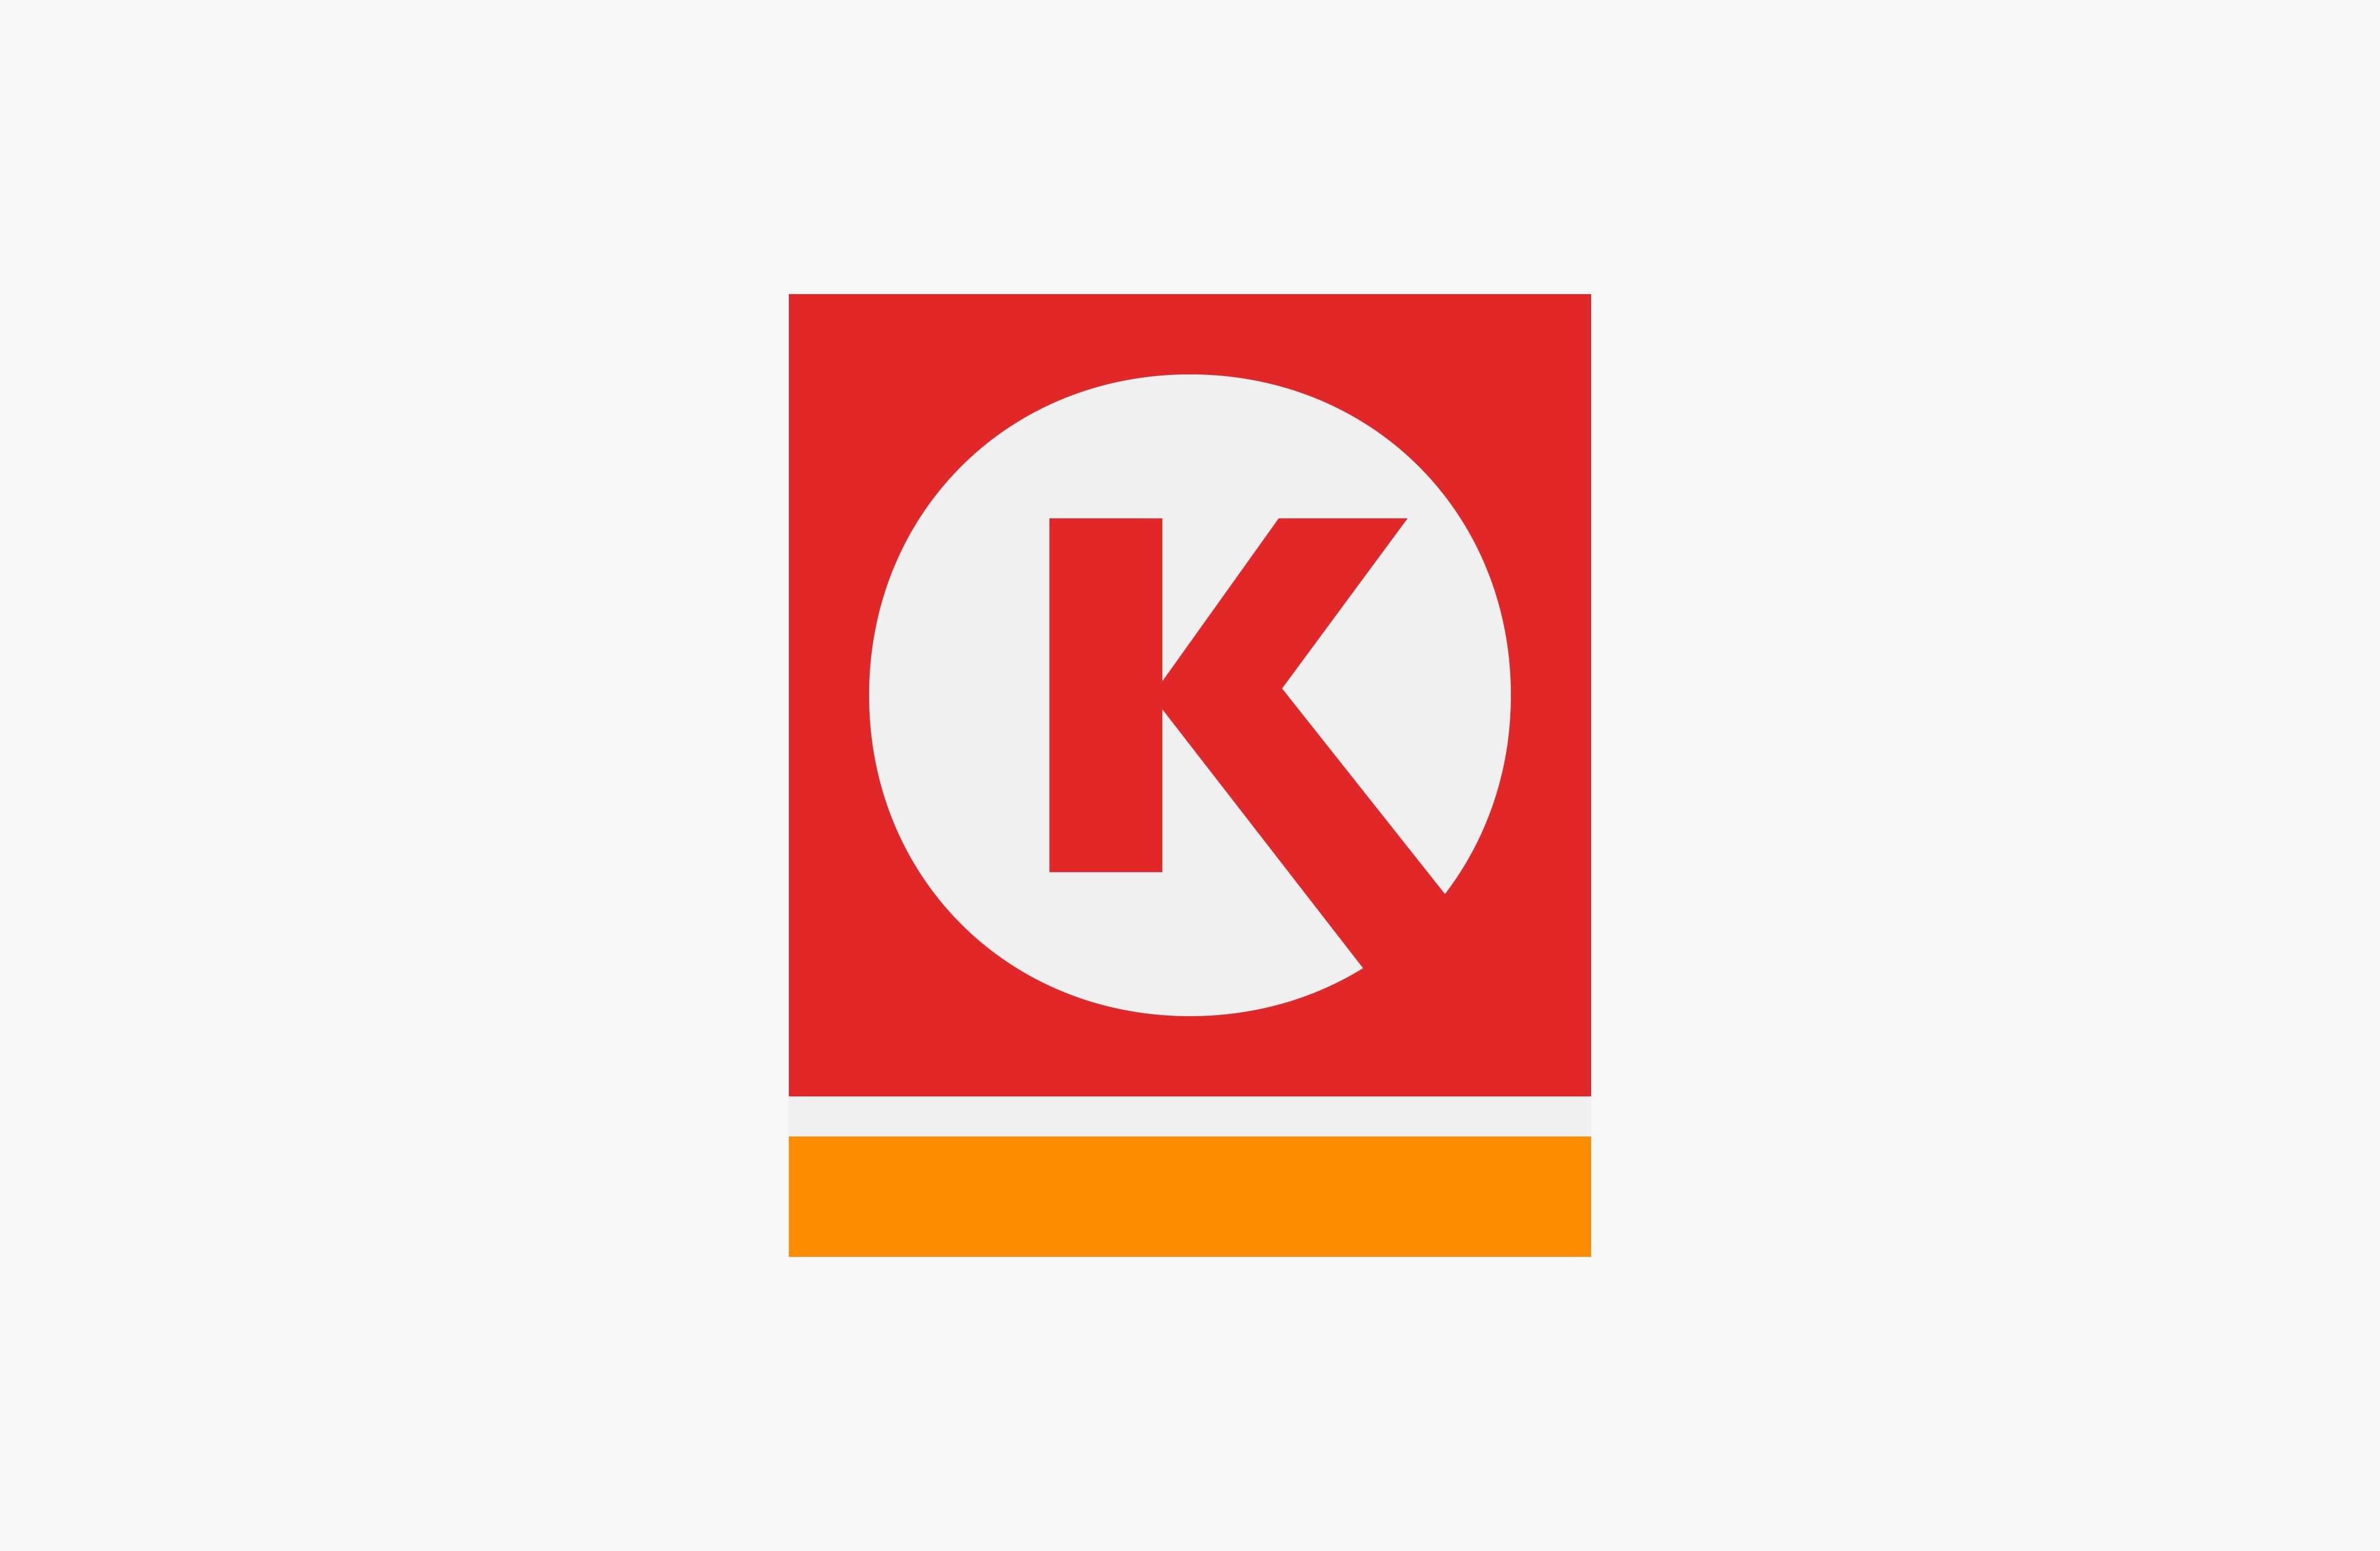 Red K Logo - Circle K